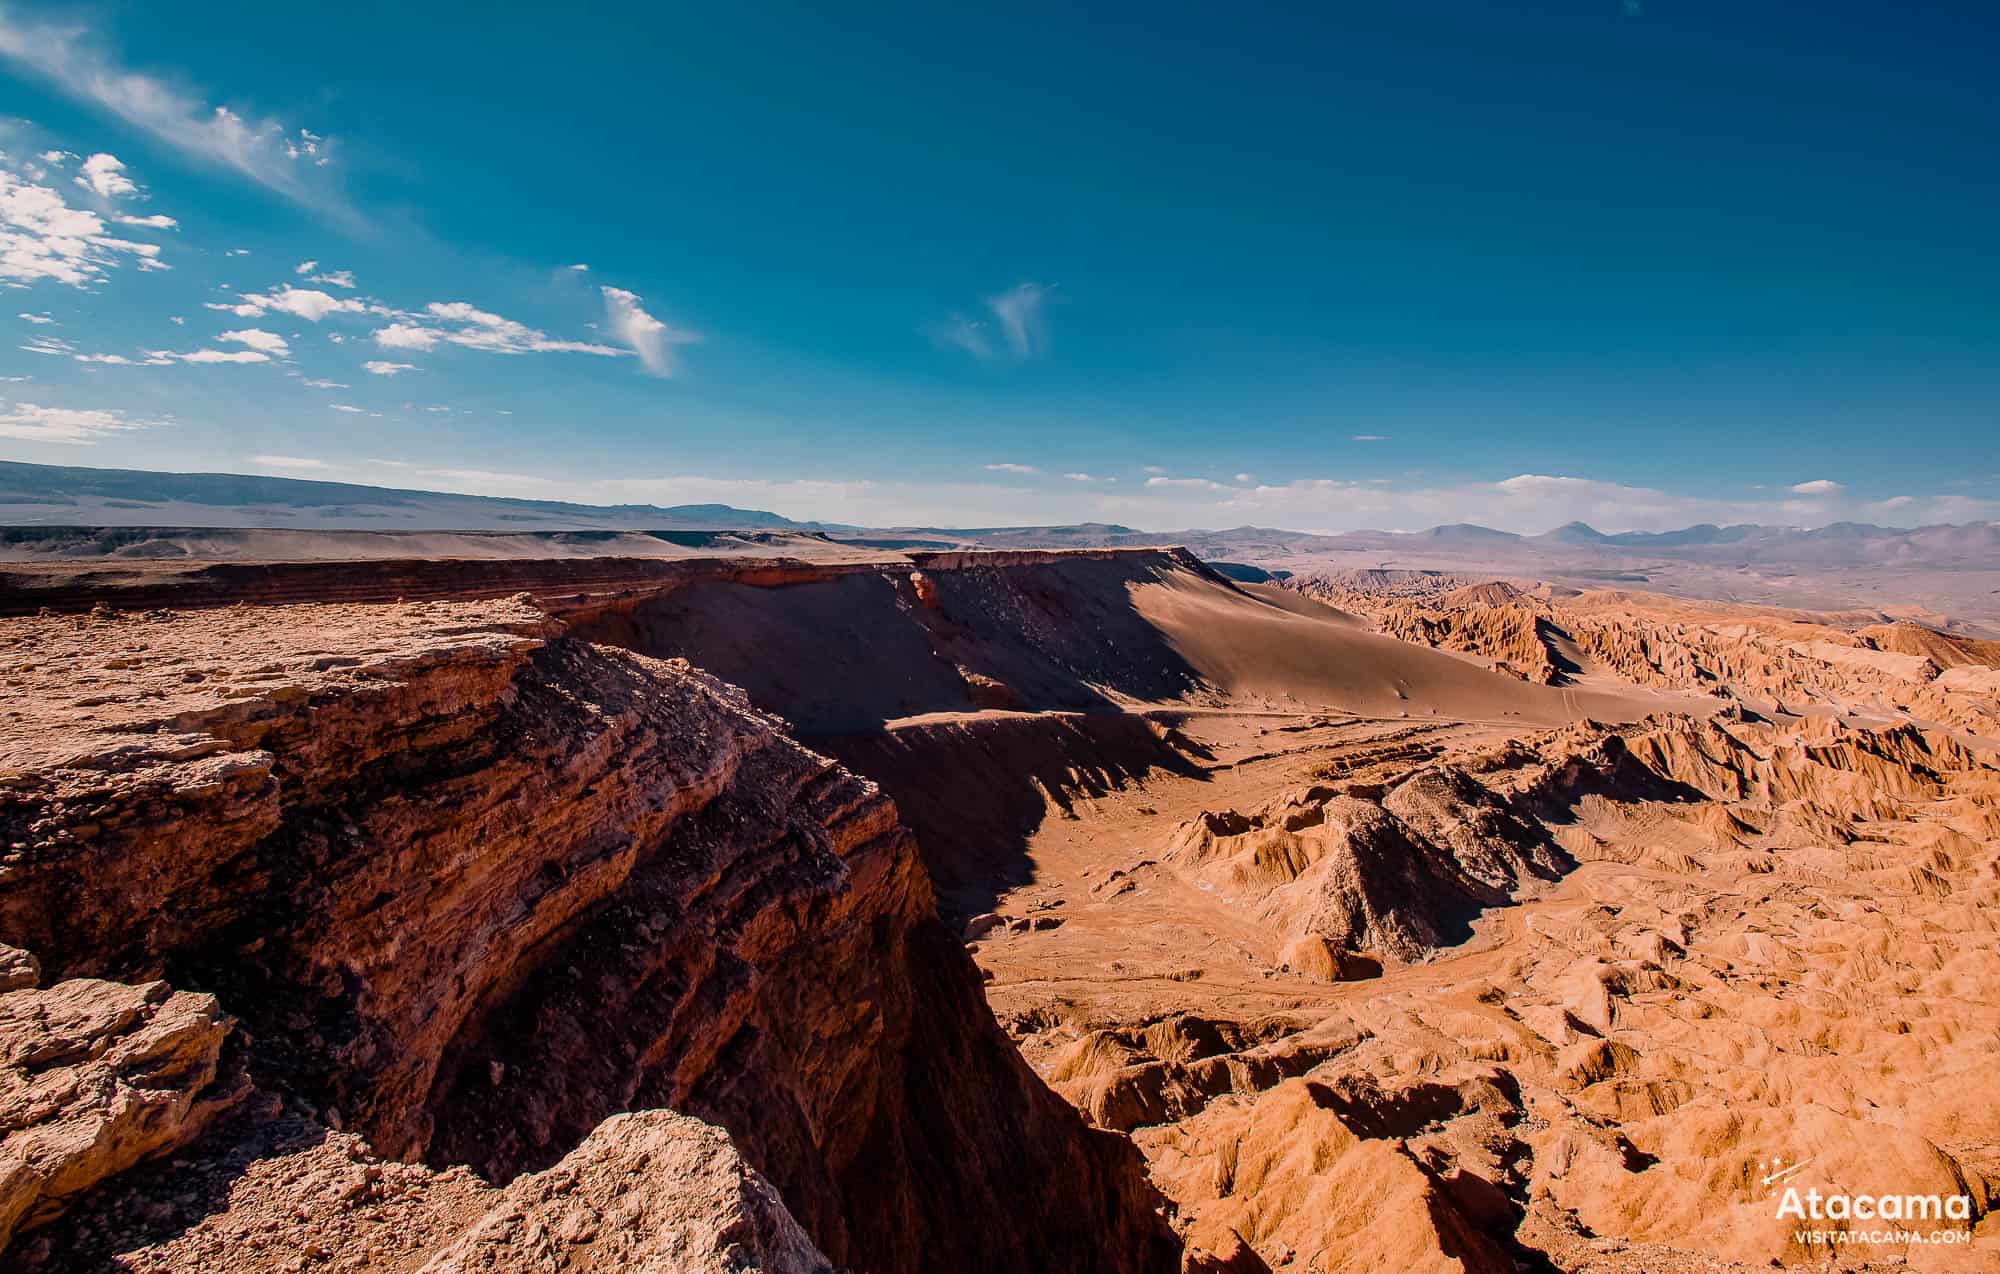 Mars Valley: The Death Valley of Atacama